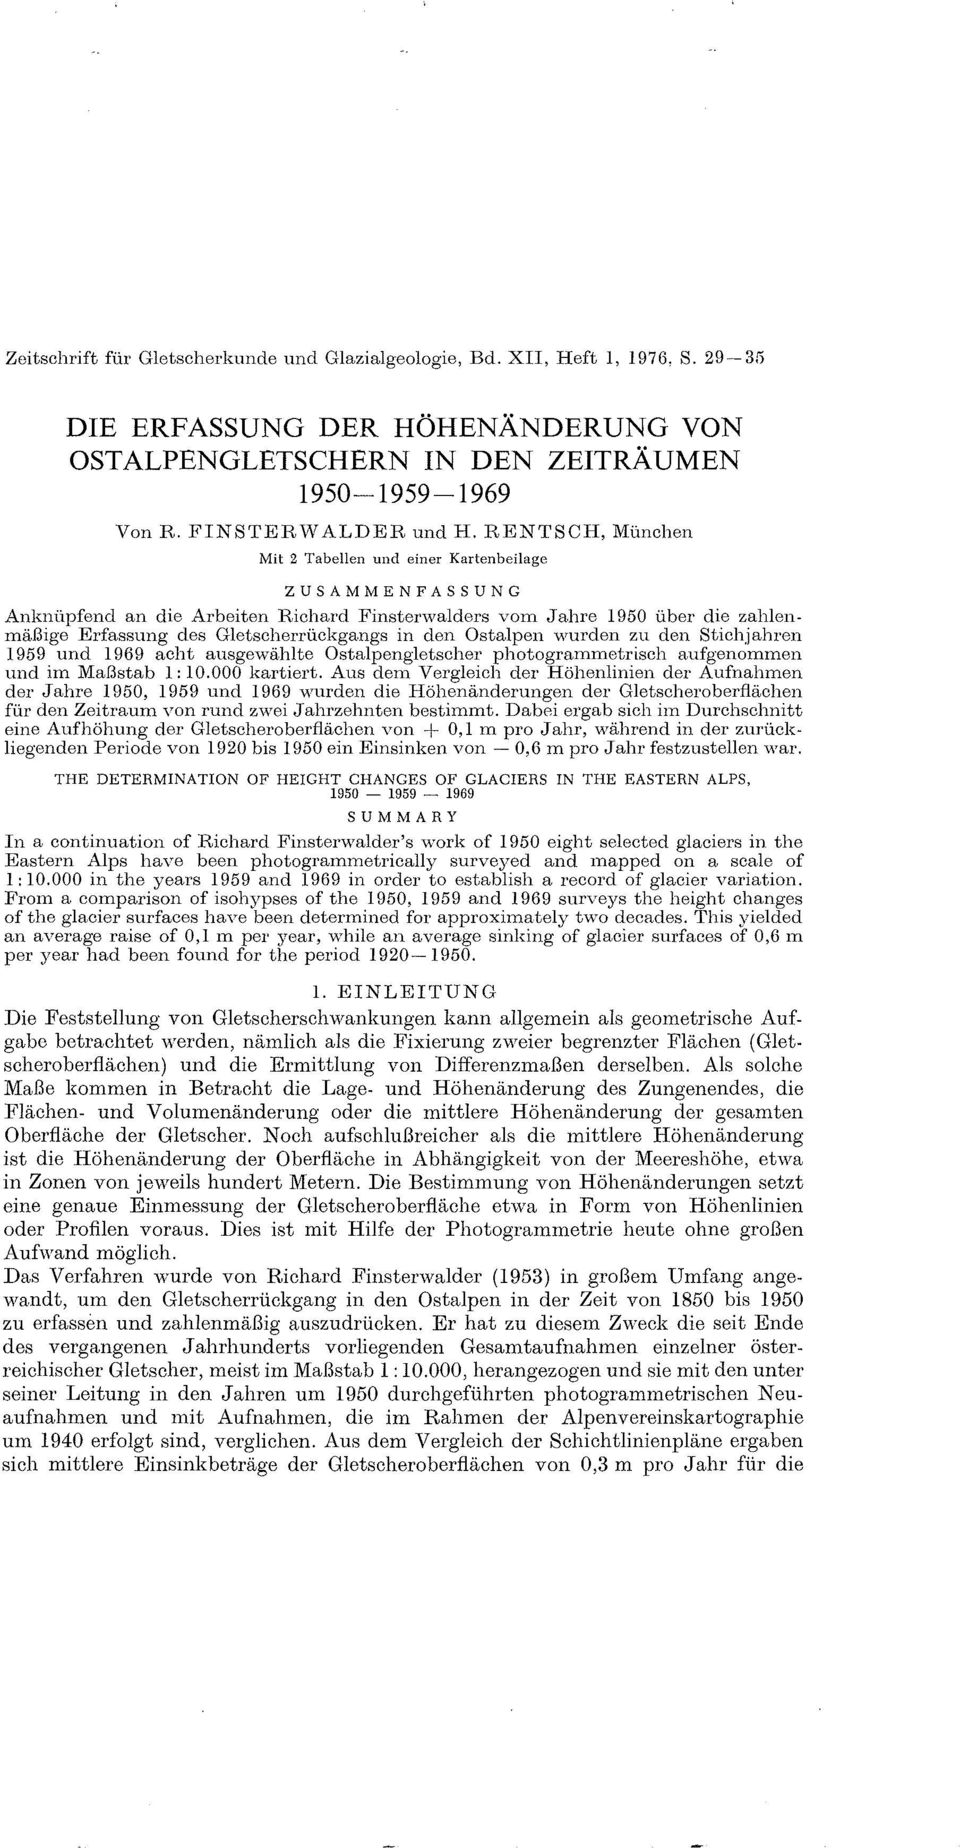 Ostalpen wurden zu den Stichjahren und acht ausgewählte Ostalpengletscher photogrammetrisch aufgenommen und im Maßstab 1: 10.0 kartiert.